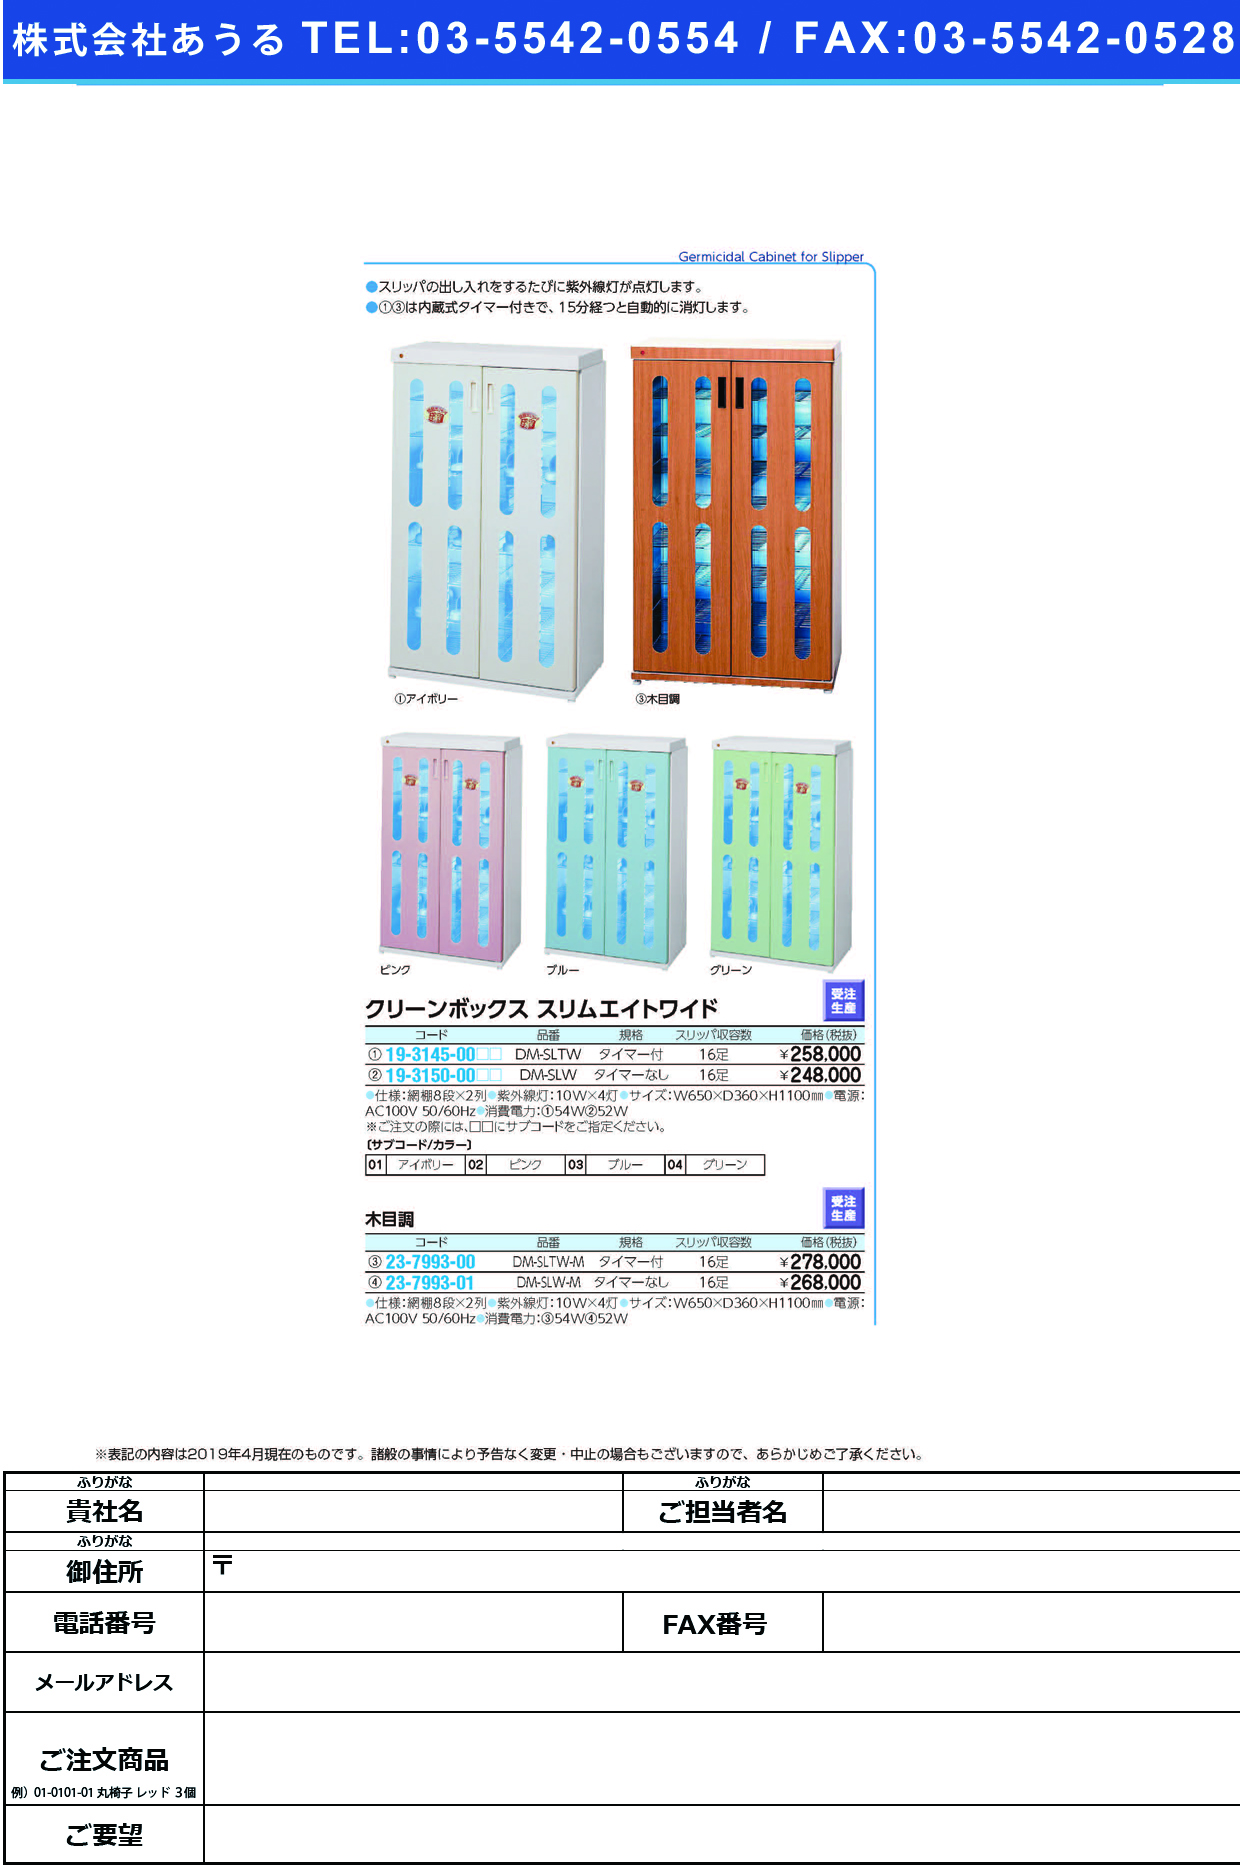 (19-3150-00)殺菌線ロッカー（スリムエイトワイド） DM-SLW(ﾀｲﾏｰﾅｼ) ｻｯｷﾝｾﾝﾛｯｶｰｽﾘﾑｴｲﾄﾜｲﾄﾞ ブルー【1台単位】【2019年カタログ商品】